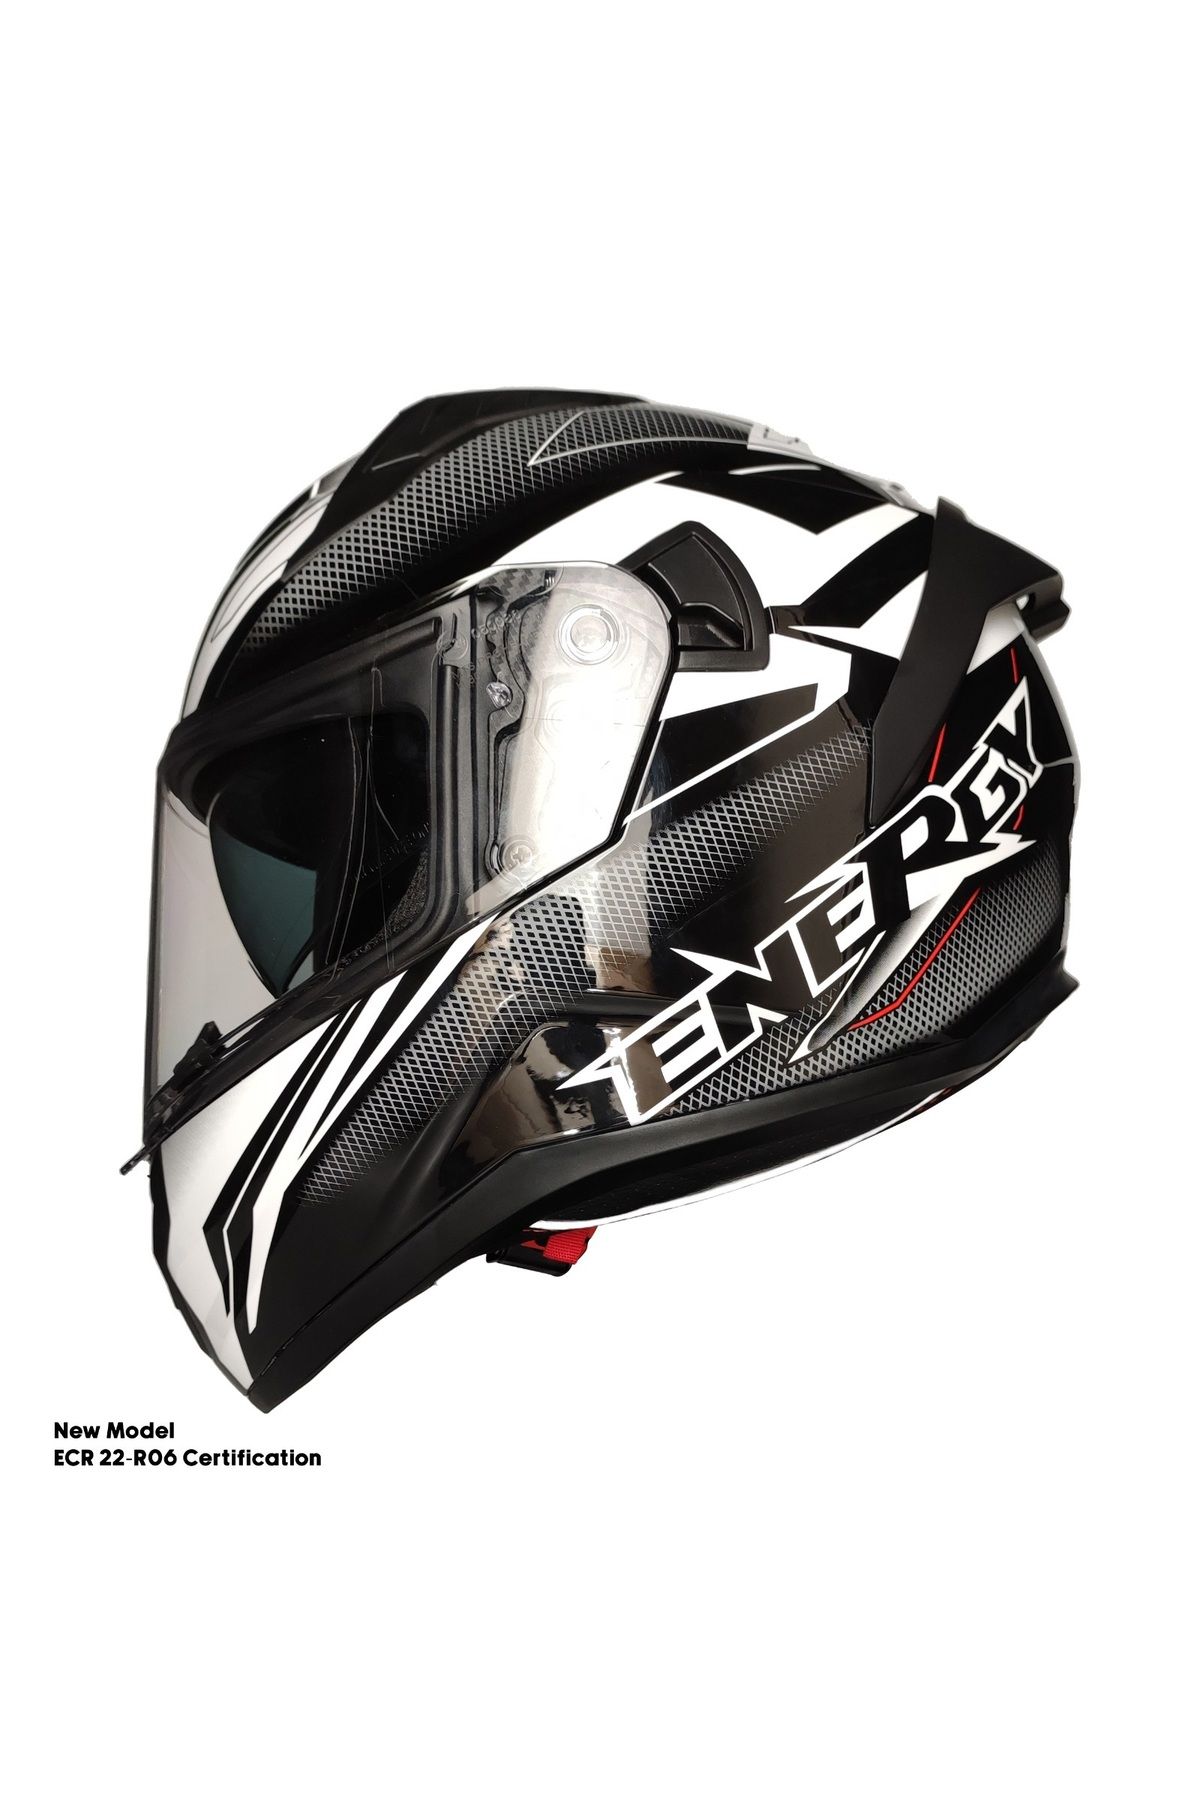 ebakbak Motosiklet Kask Ece 22.R06 Sertifikalı Double Vizör Fiber Motor Kaskı Full Face Yeni Sezon ENERGY